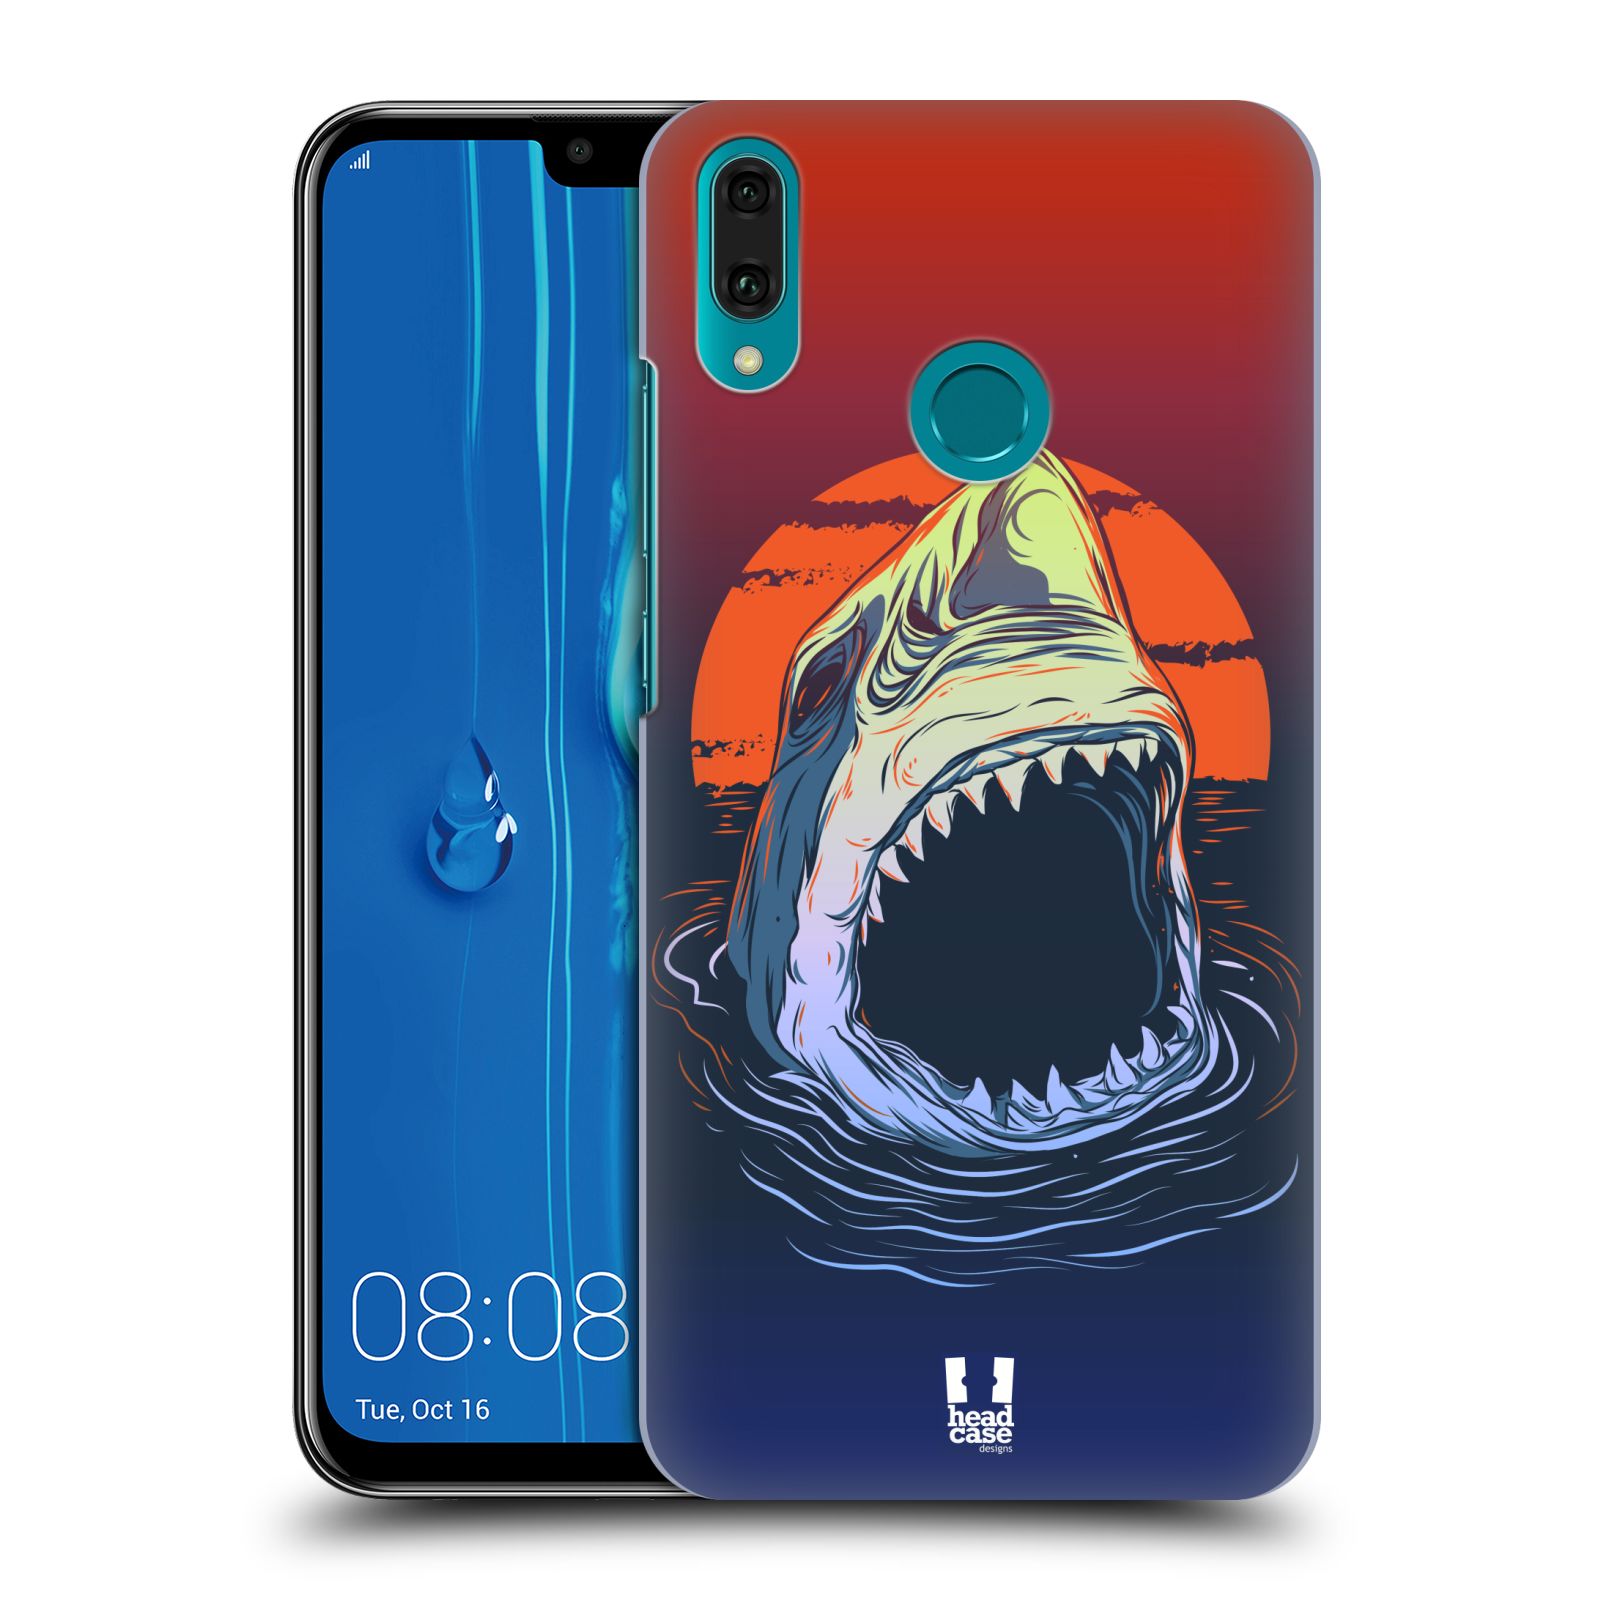 Pouzdro na mobil Huawei Y9 2019 - HEAD CASE - vzor mořská monstra žralok